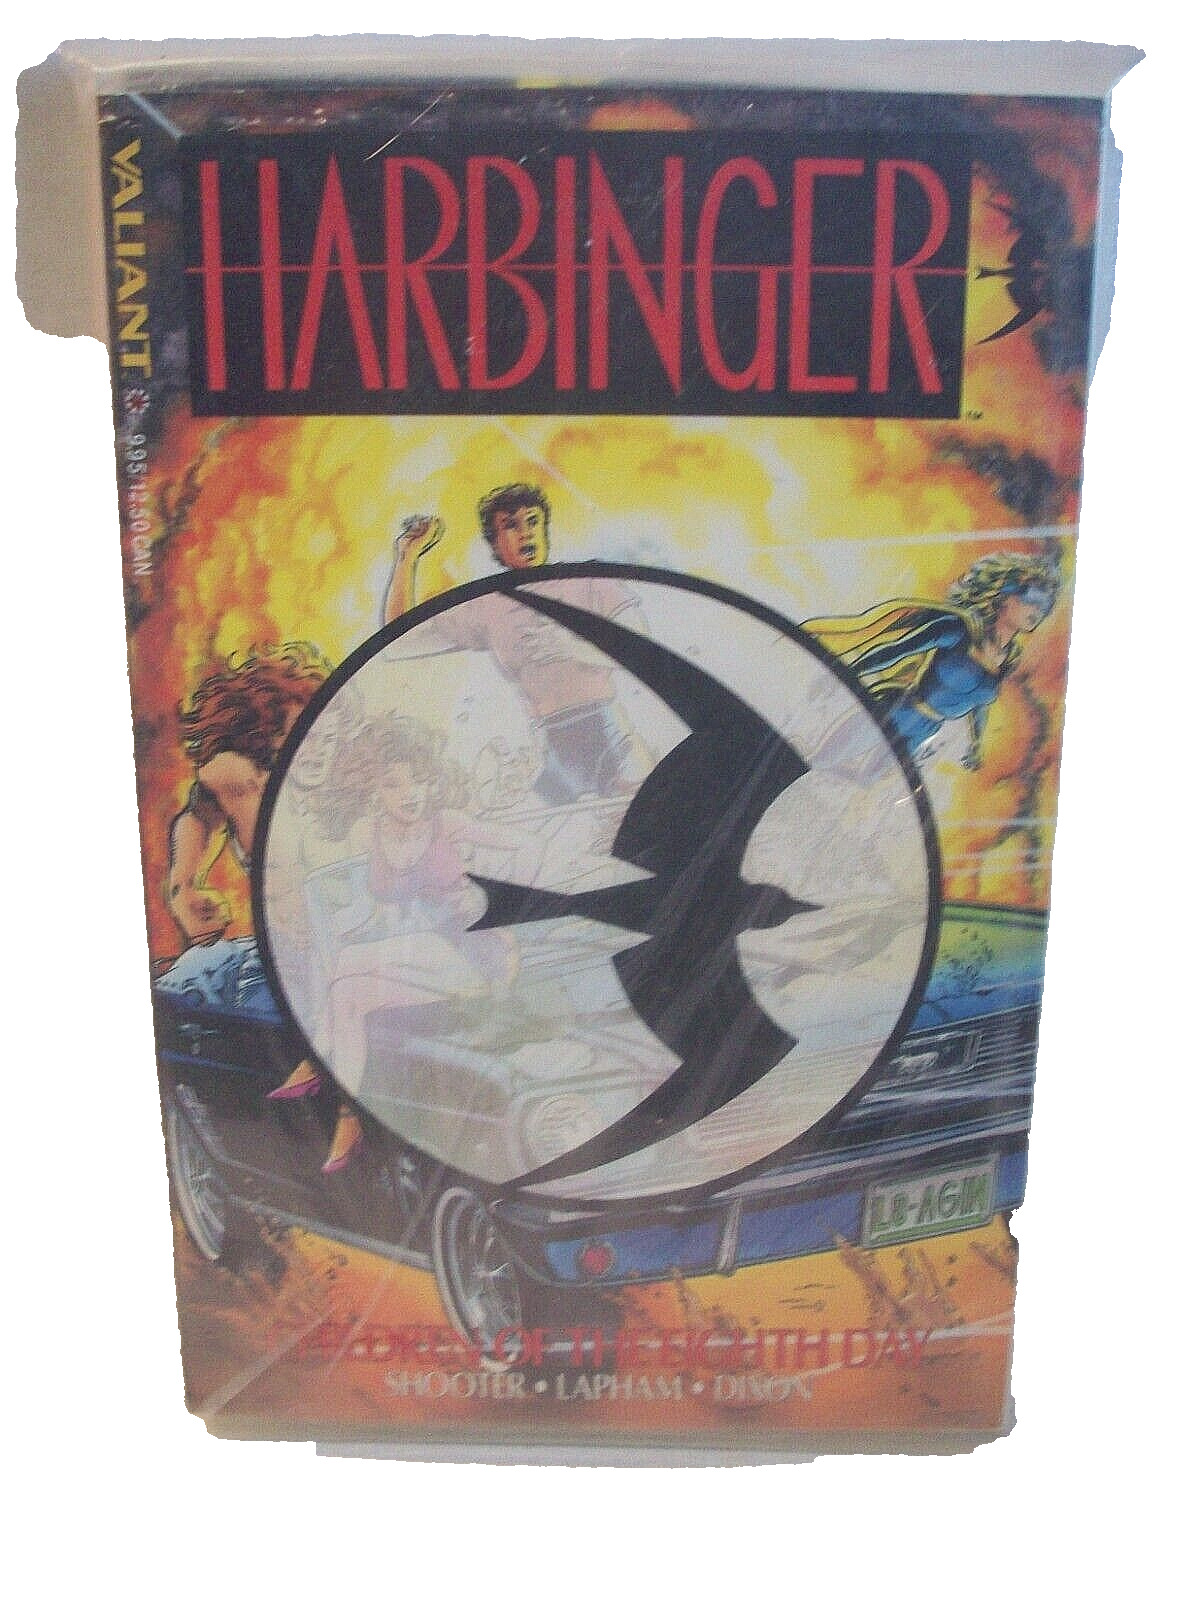 Harbinger TPB Graphic Novel Black Logo Valiant Comic SEALED W Harbinger # 0 NM